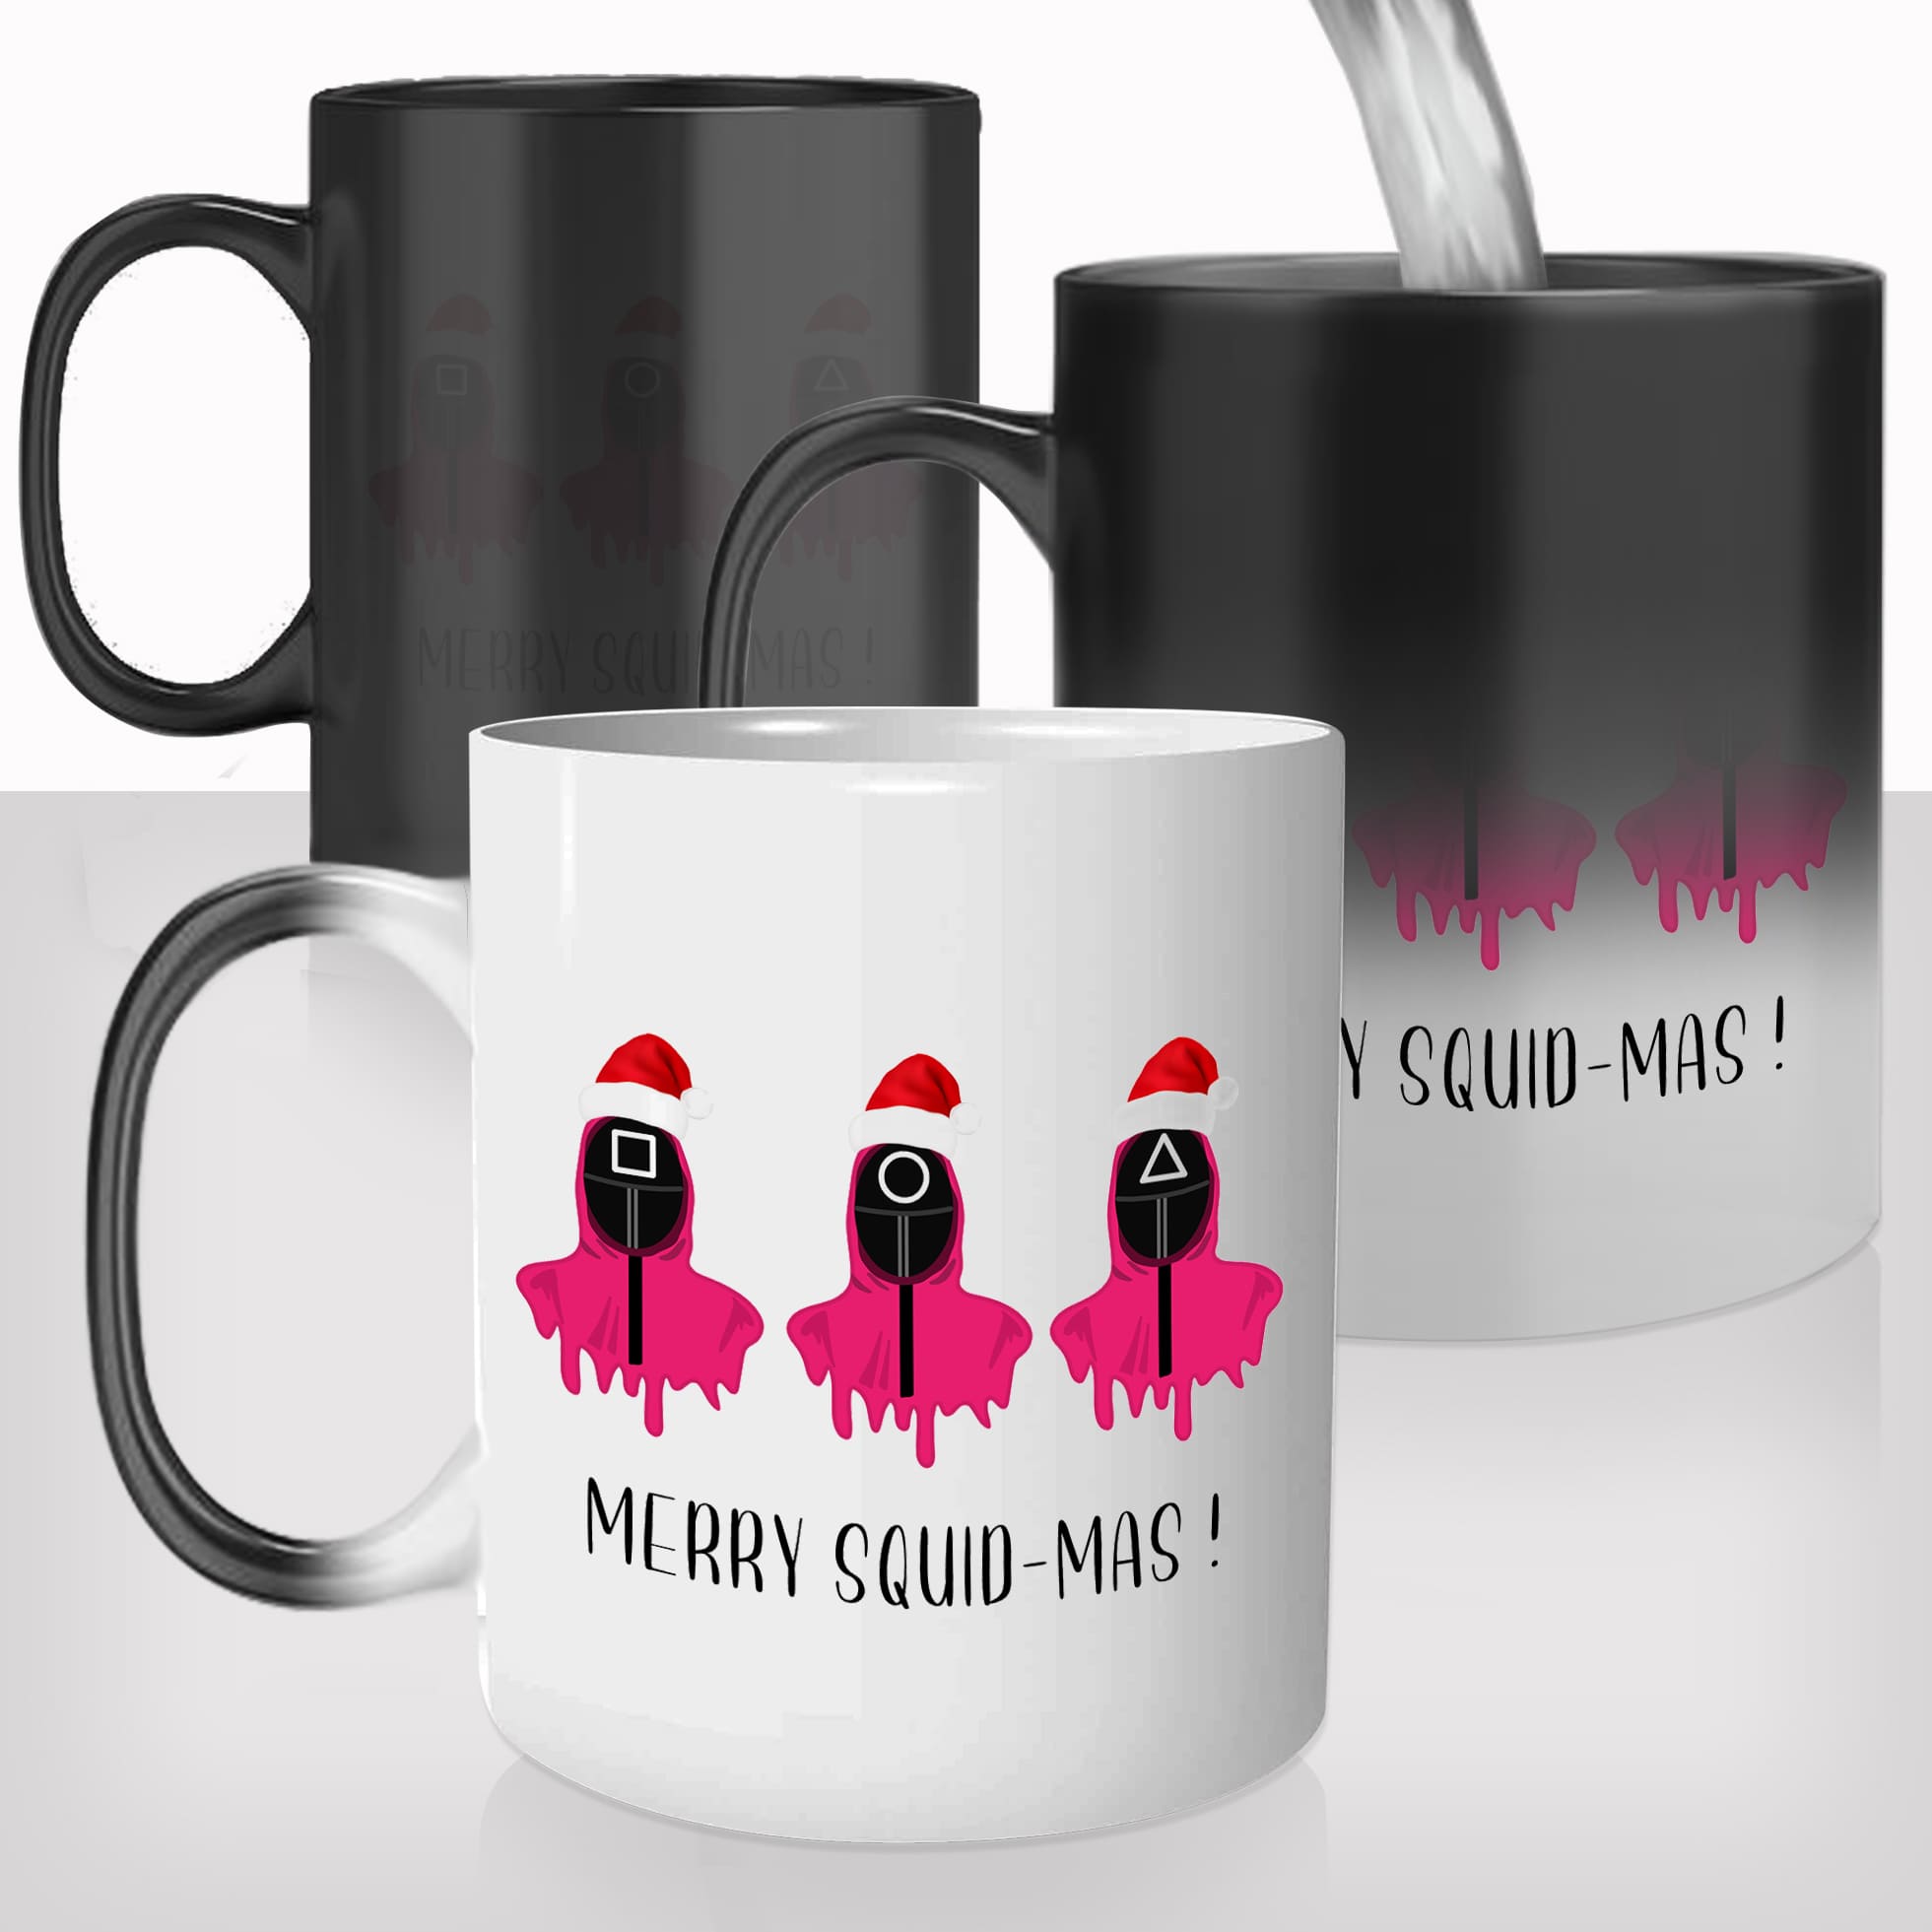 mug-magique-personnalisé-tasse-thermo-reactif-thermique-merry-squid-mas-noel-christmas-série-coréenne-personnalisable-cadeau-original-fun